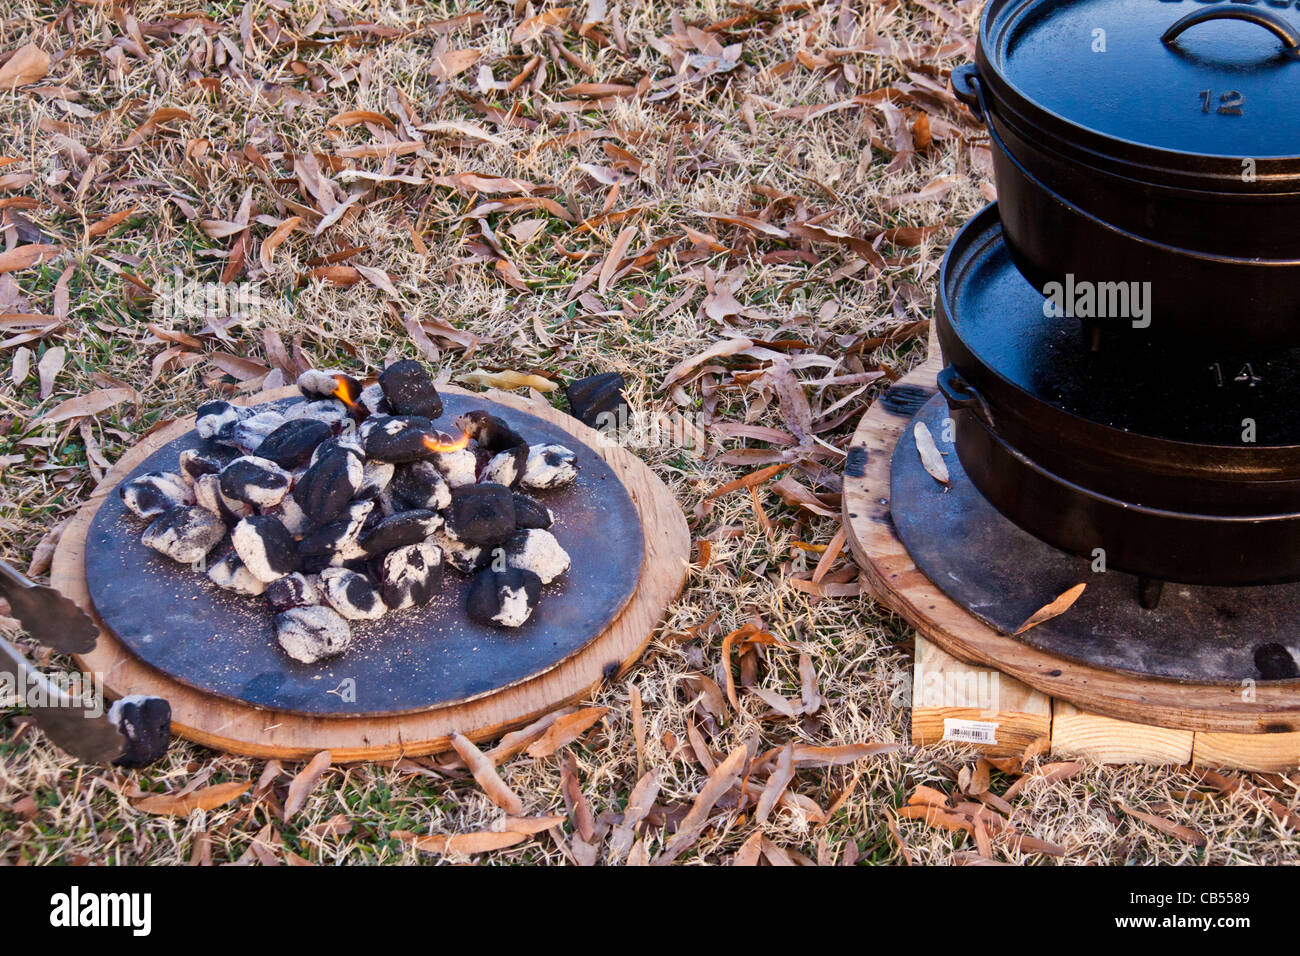 Horno holandés, cocinar al aire libre usando potes apilados con base de metal y admite el almacenamiento de carbón caliente después de su uso. Foto de stock